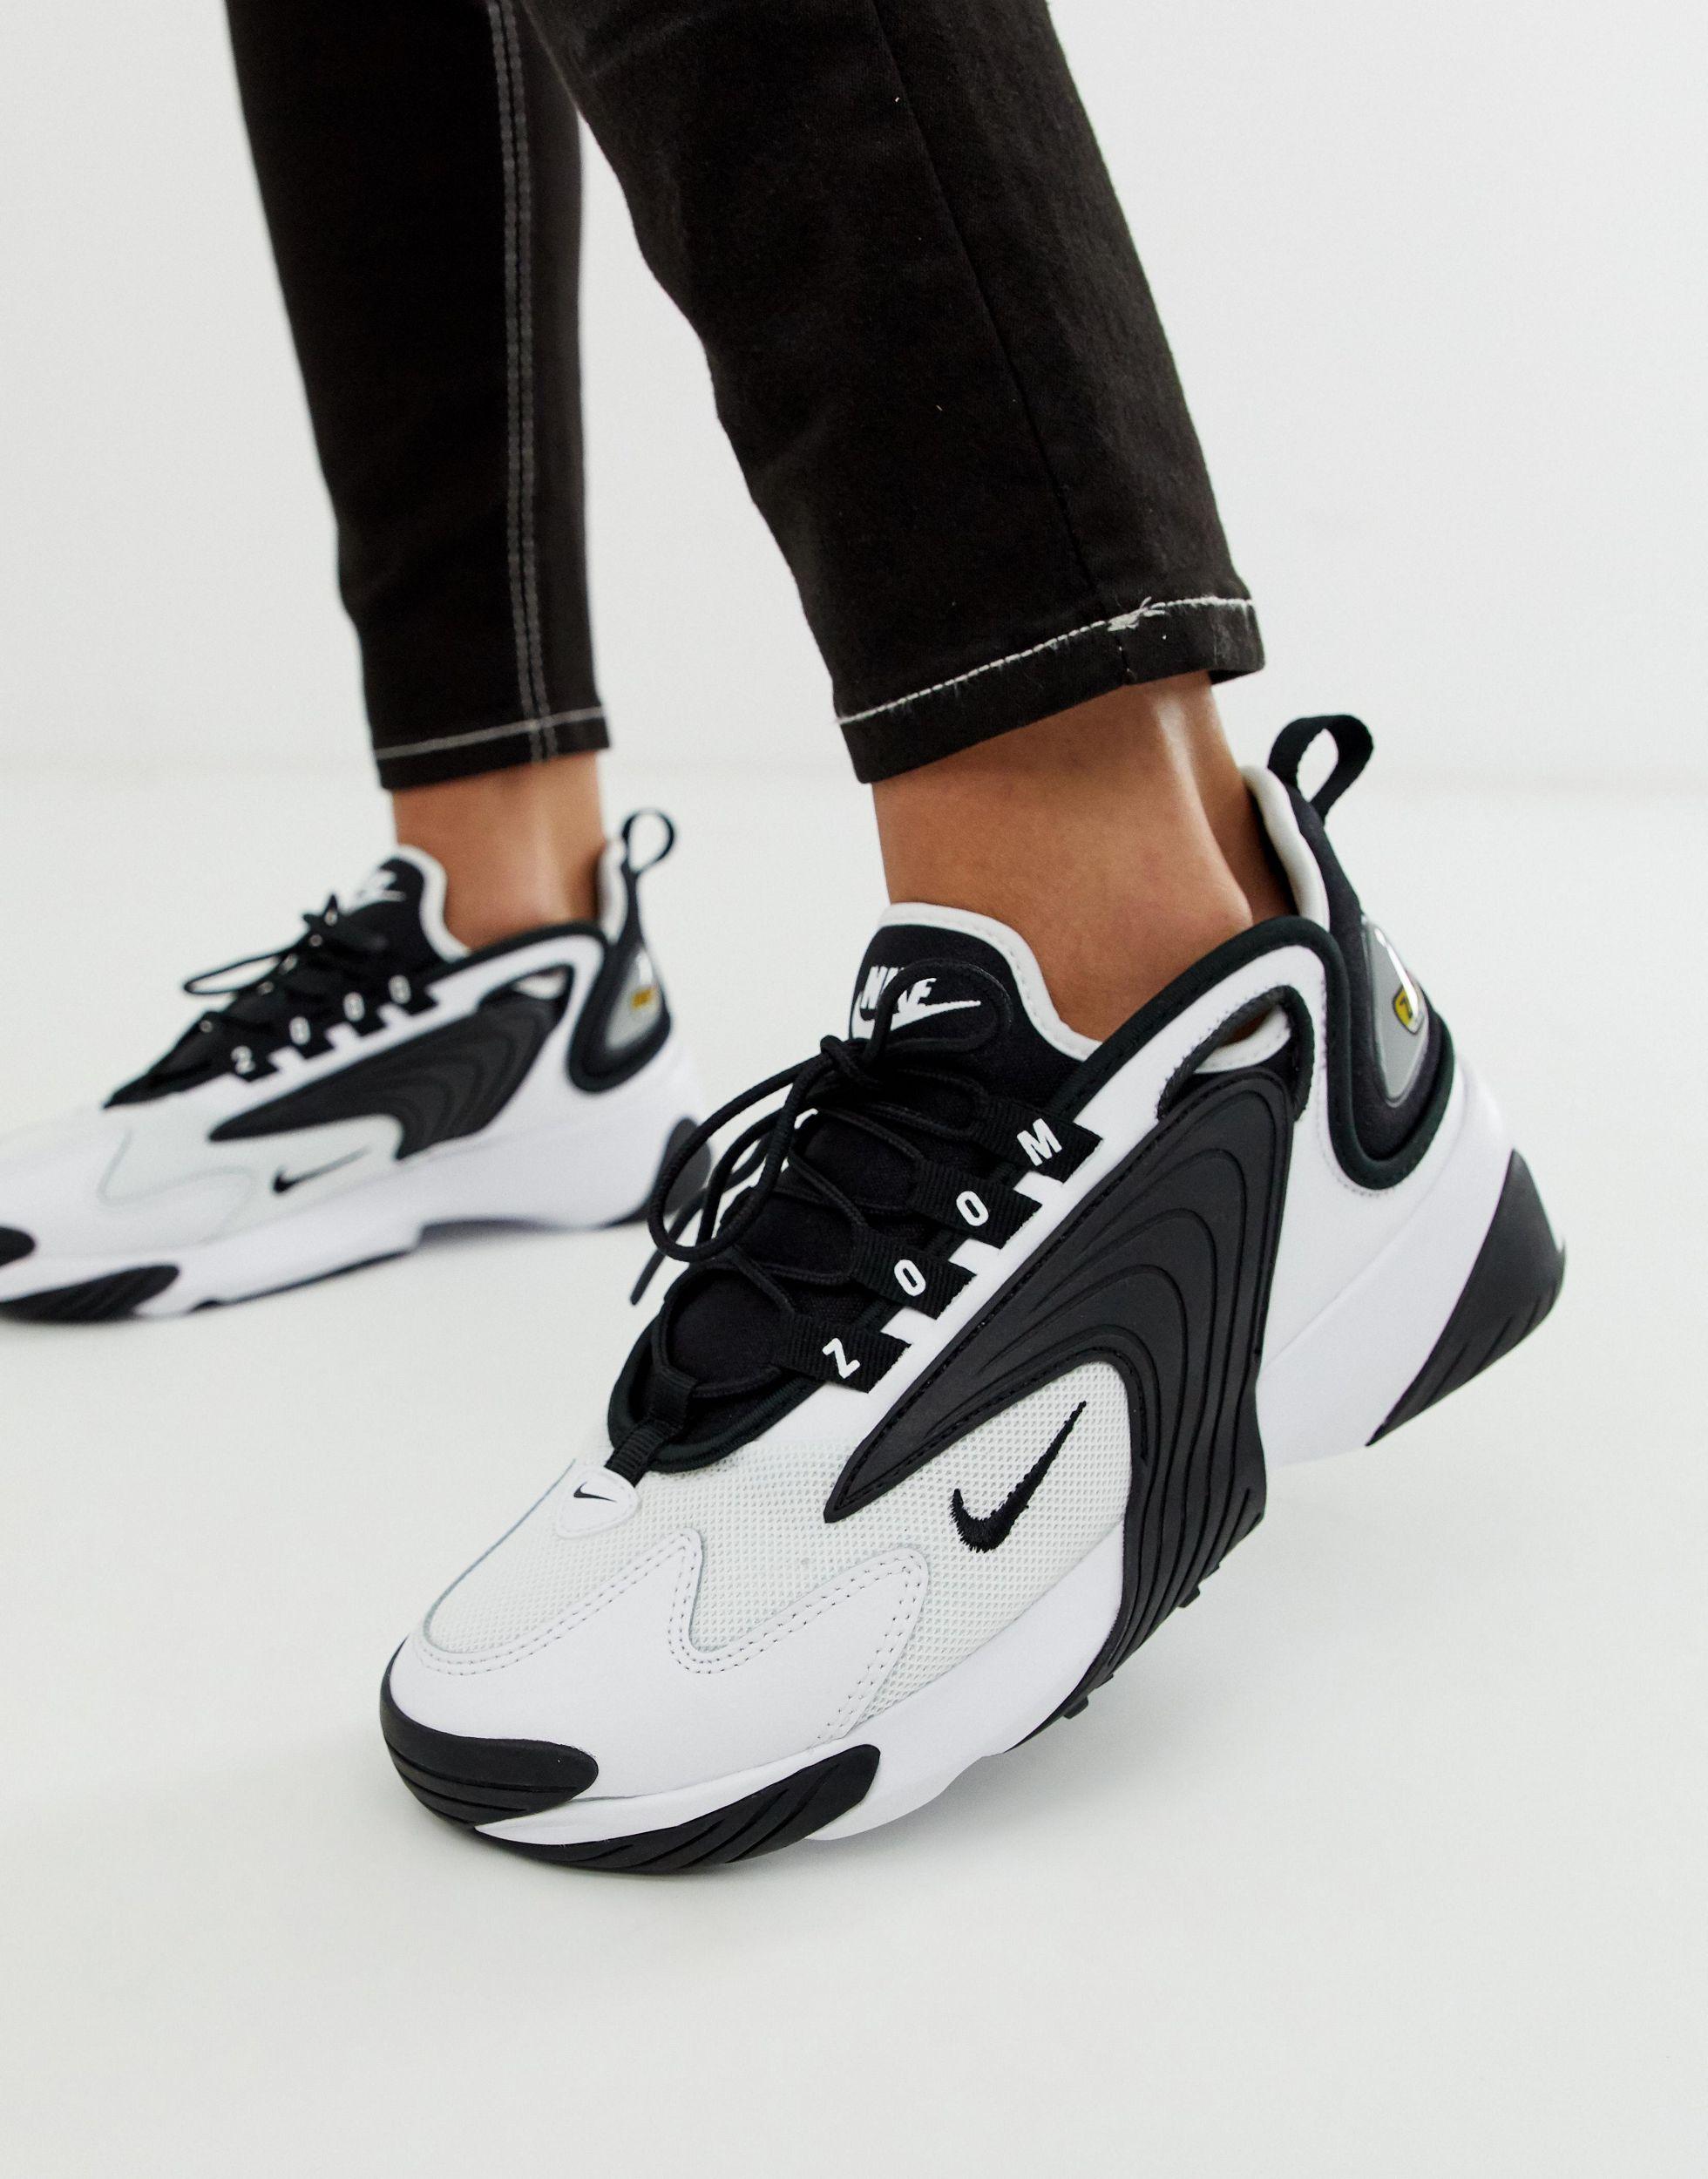 Nike Leather Zoom 2k in White/Black (Black) | Lyst ملابس رجالية